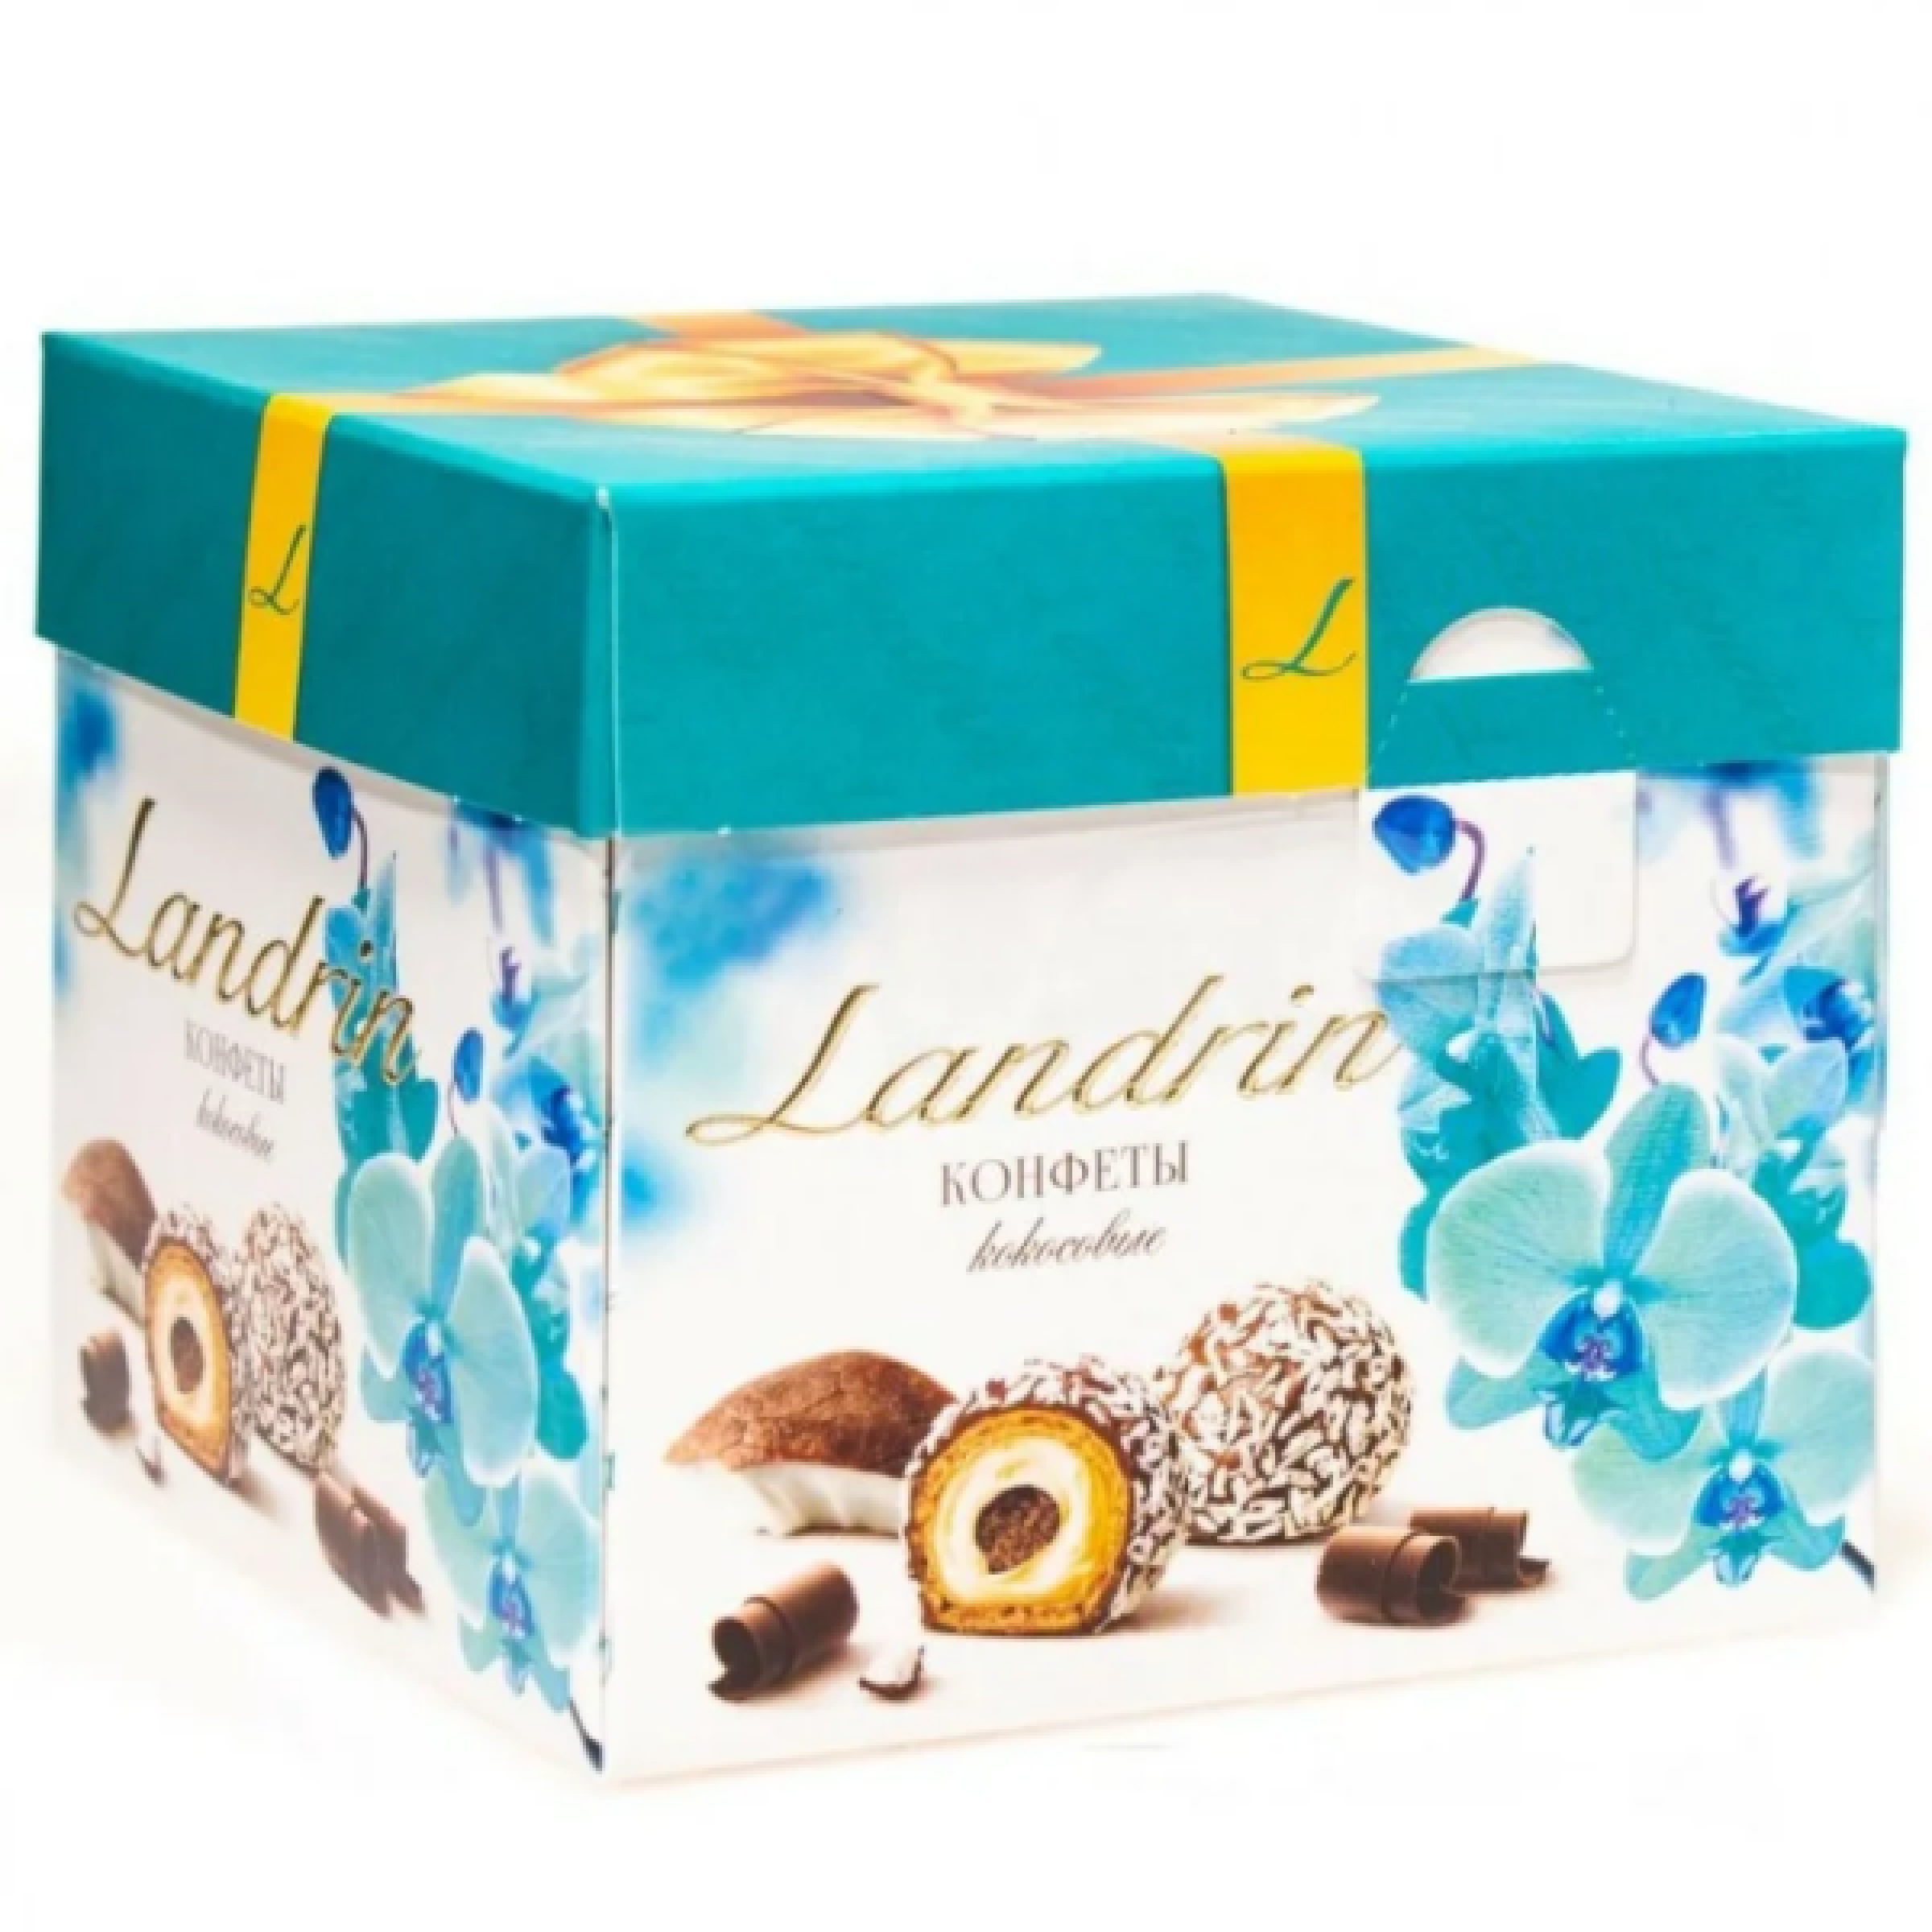 Набор конфет Landrin с кокосовым вкусом, 120 г